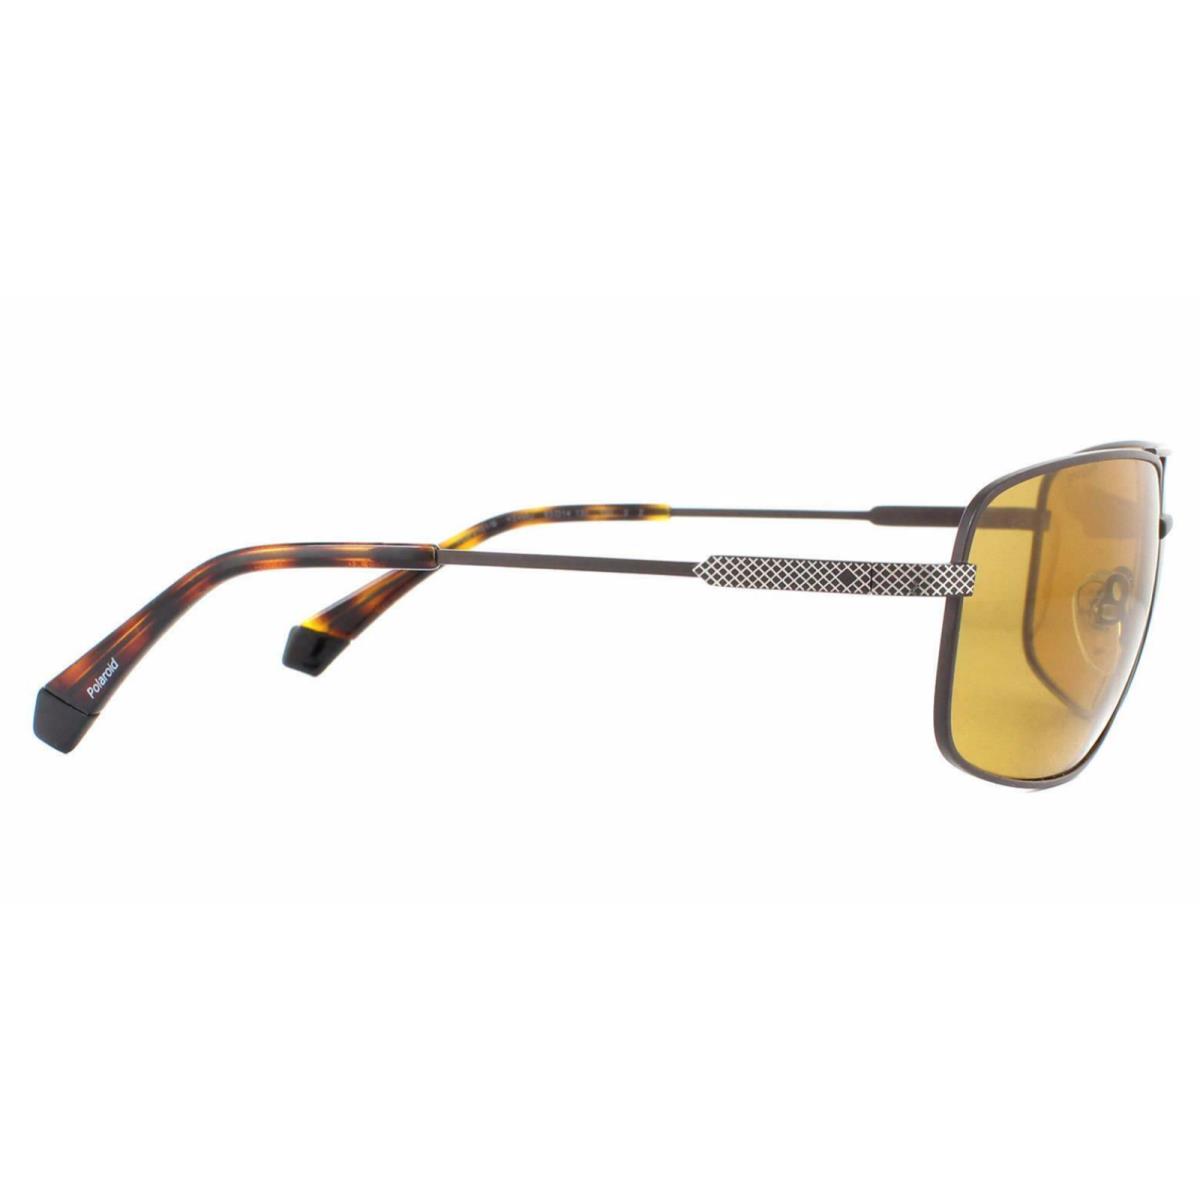 Polaroid sunglasses PDL - Matte Brown & Tortoise Frame, Light Yellow Polarized Lens